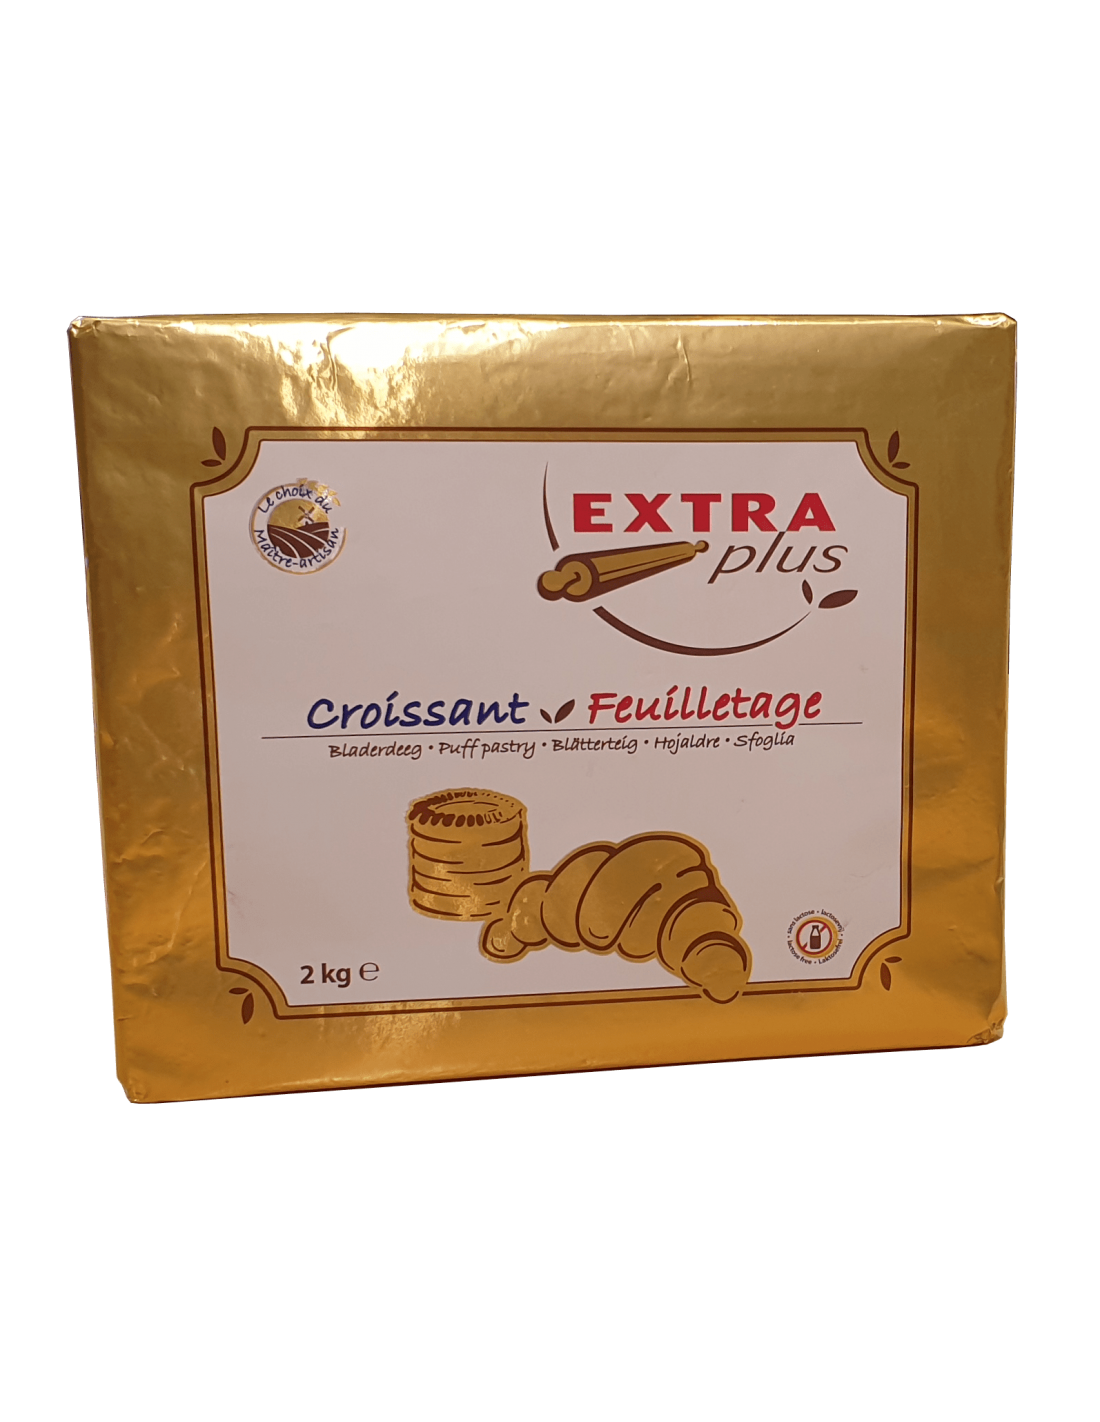 Beurre concentré millefeuille croissant plaque de 2 kg - Transgourmet